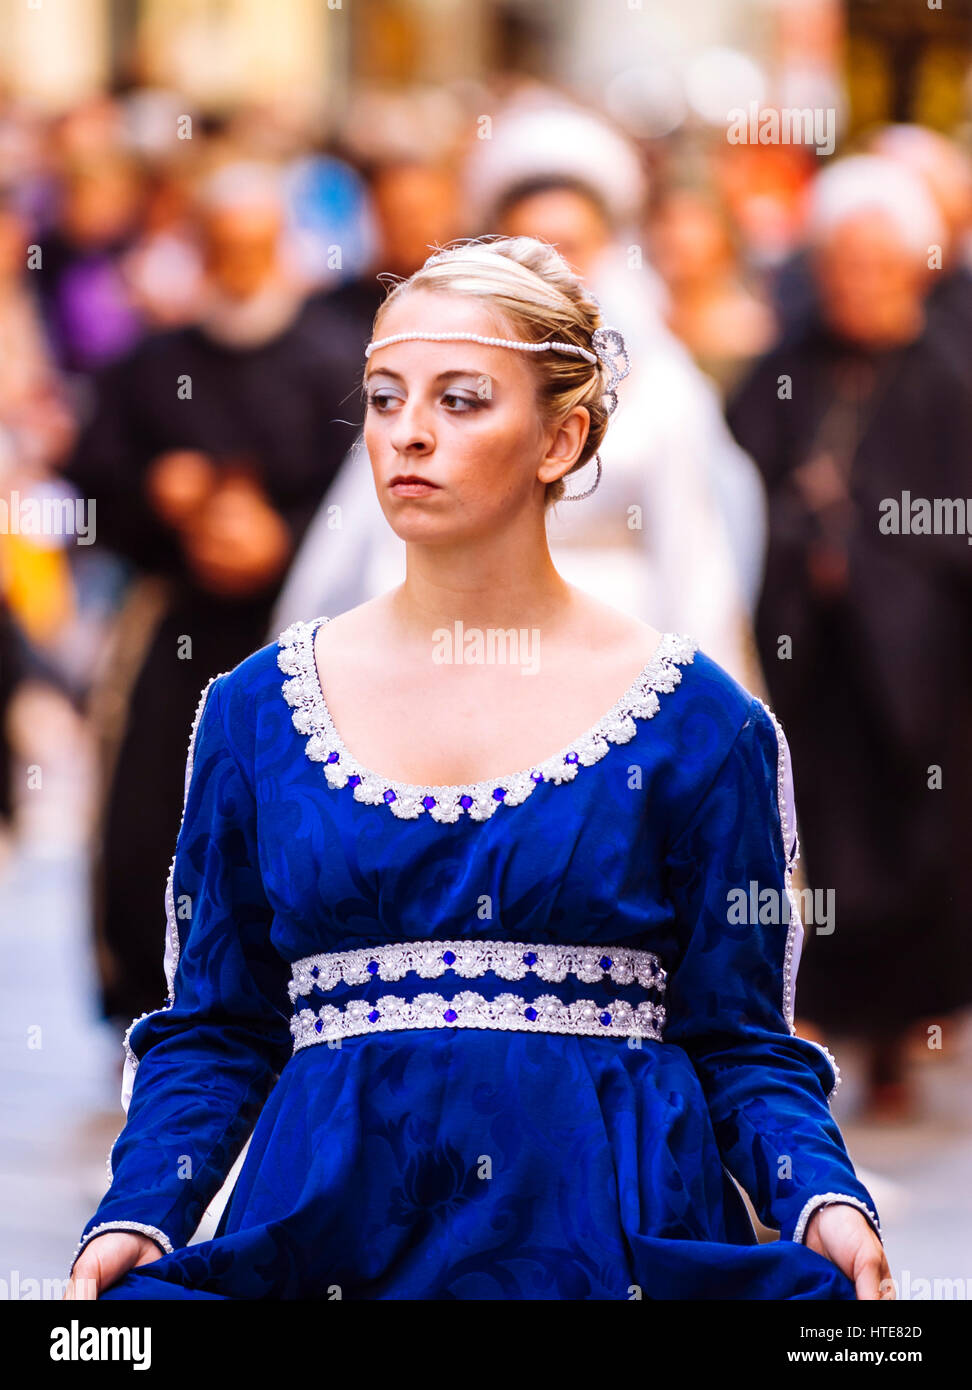 Asti, Italia - 19 Settembre 2010: la principessa medievale, durante la rievocazione storica del Palio di Asti in Piemonte, Italia- Signora del Medioevo Foto Stock